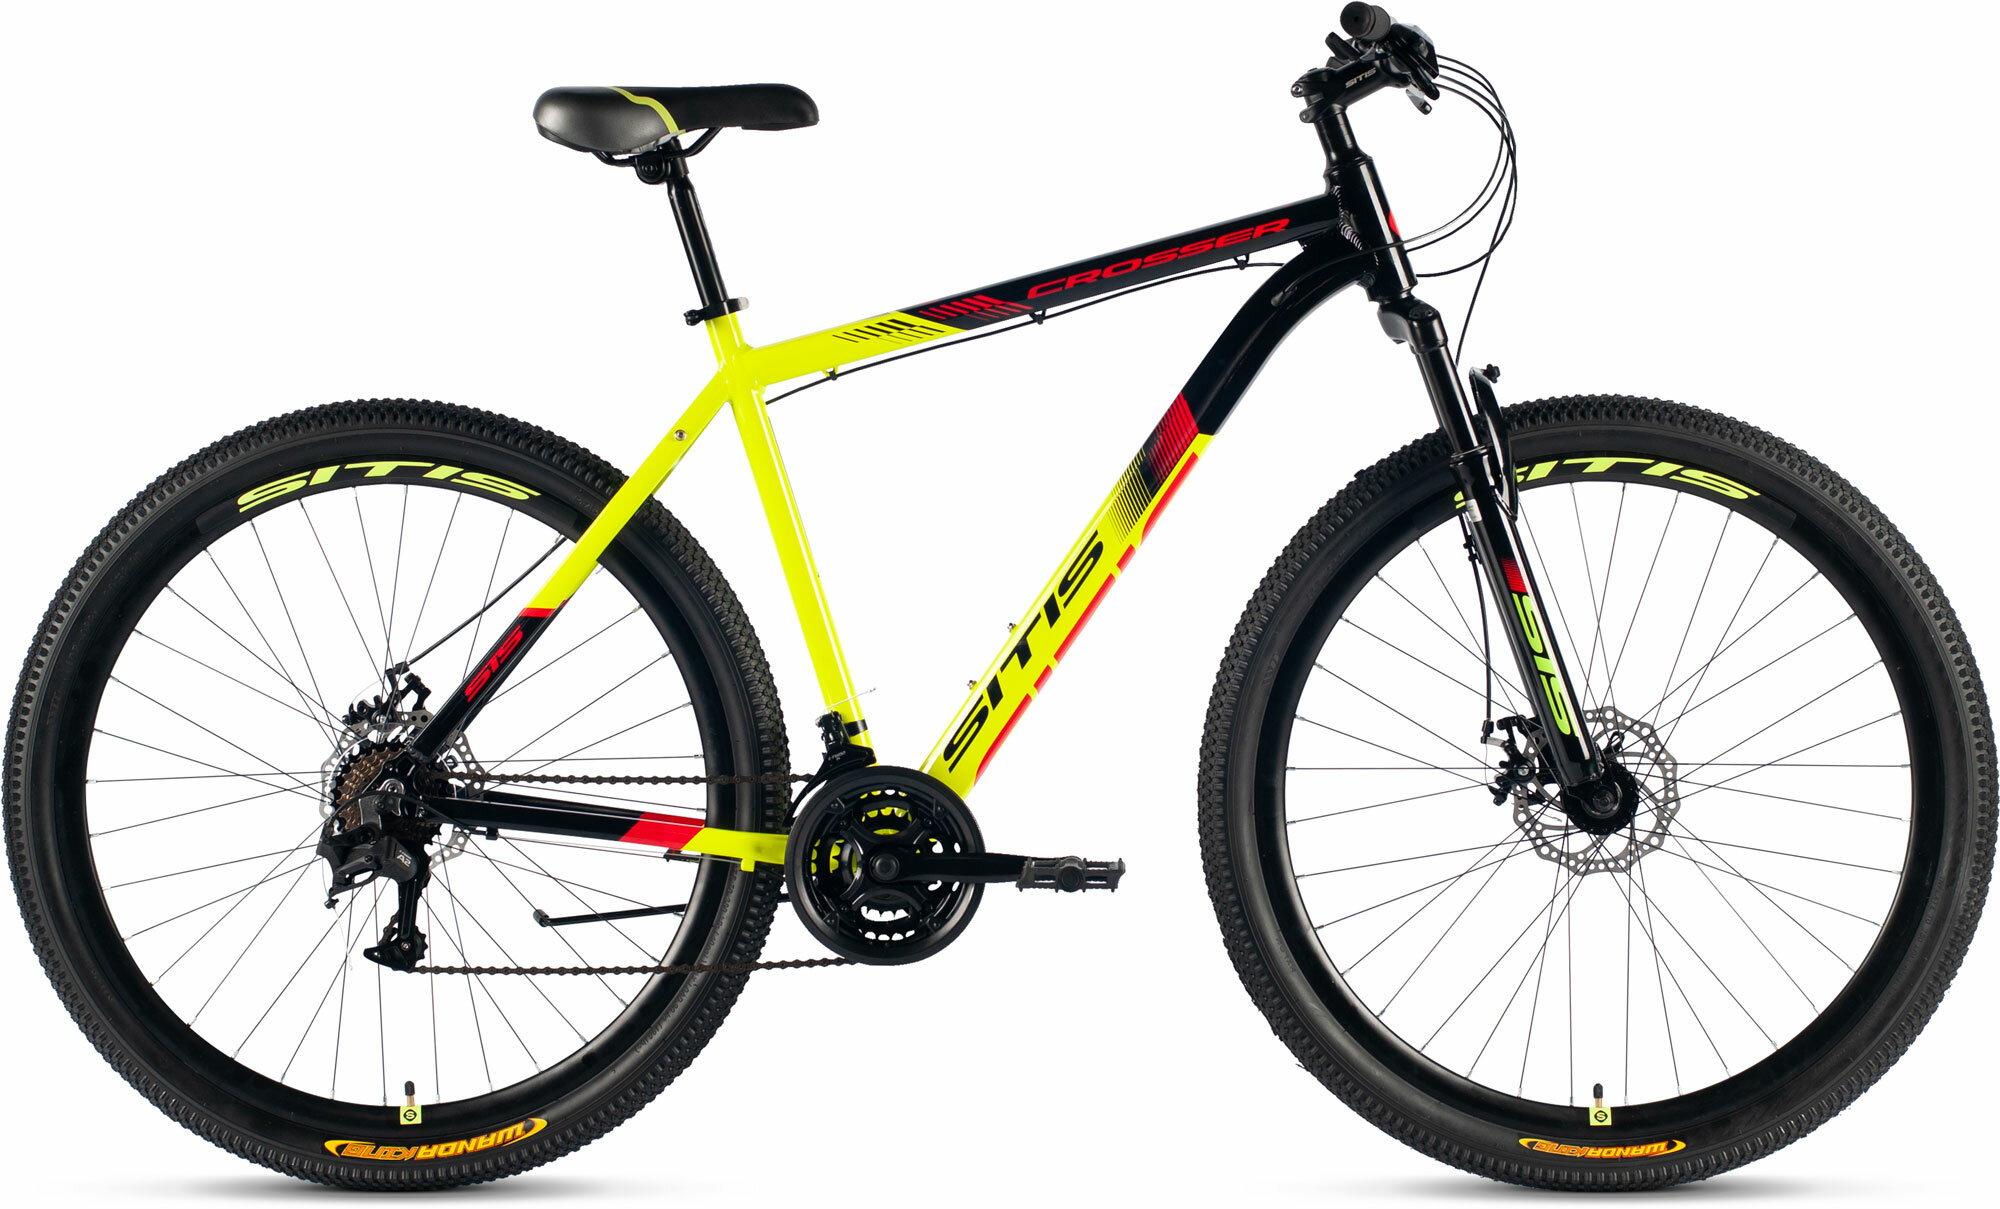 Велосипед горный SITIS CROSSER SCR29MD 29" (2024), хардтейл, взрослый, мужской, алюминиевая рама, 21 скорость, дисковые механические тормоза, цвет Black-Yellow-Red, черный/желтый/красный цвет, размер рамы 21", для роста 185-195 см